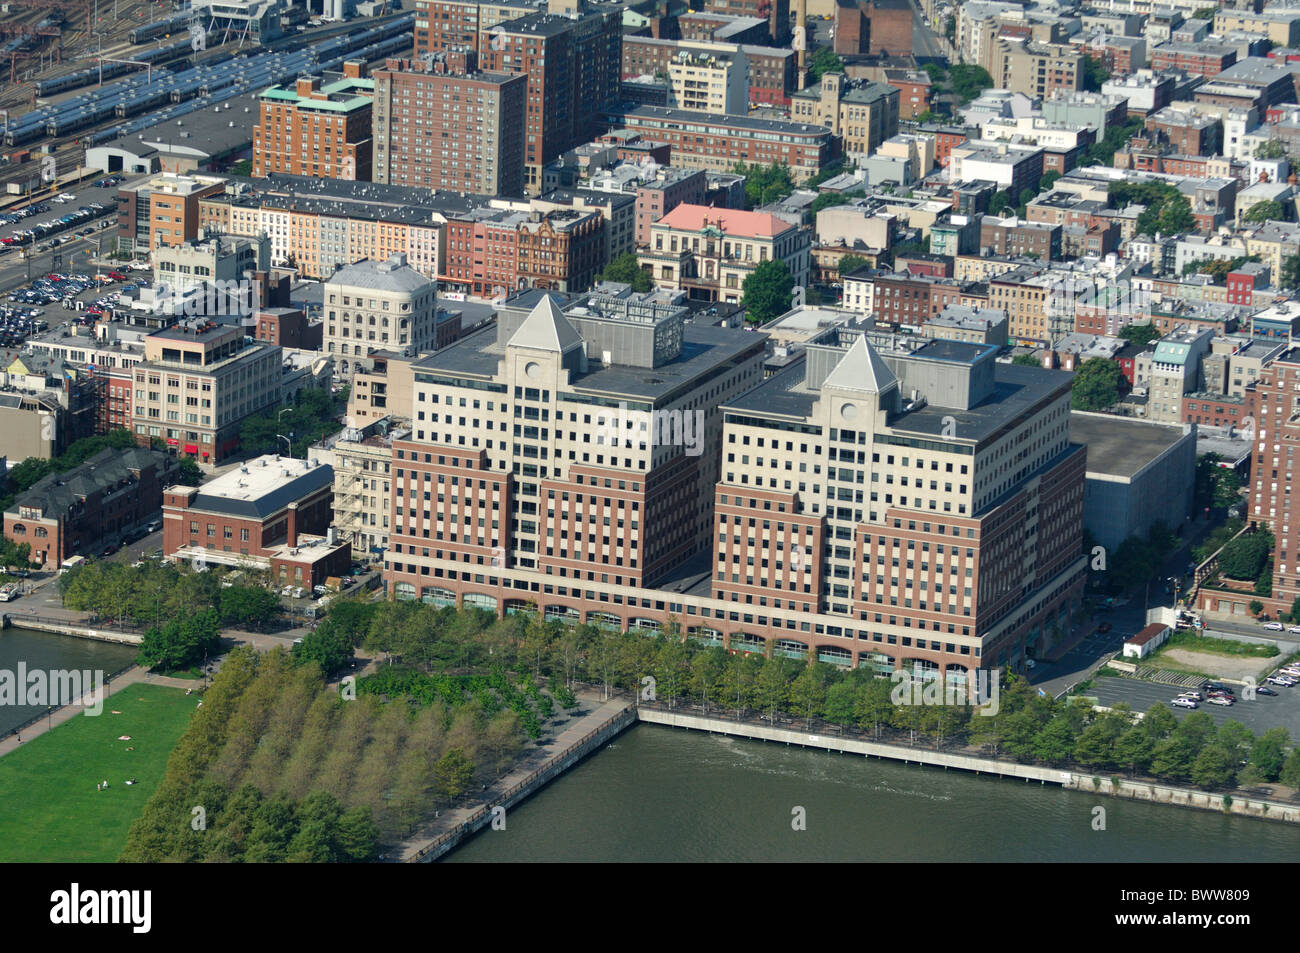 Vue aérienne de la ville de Hoboken, Sinatra Drive et de la jetée d'un parc sur la rivière Hudson, Hudson County, New Jersey, en Amérique du Nord, Etats-Unis Banque D'Images